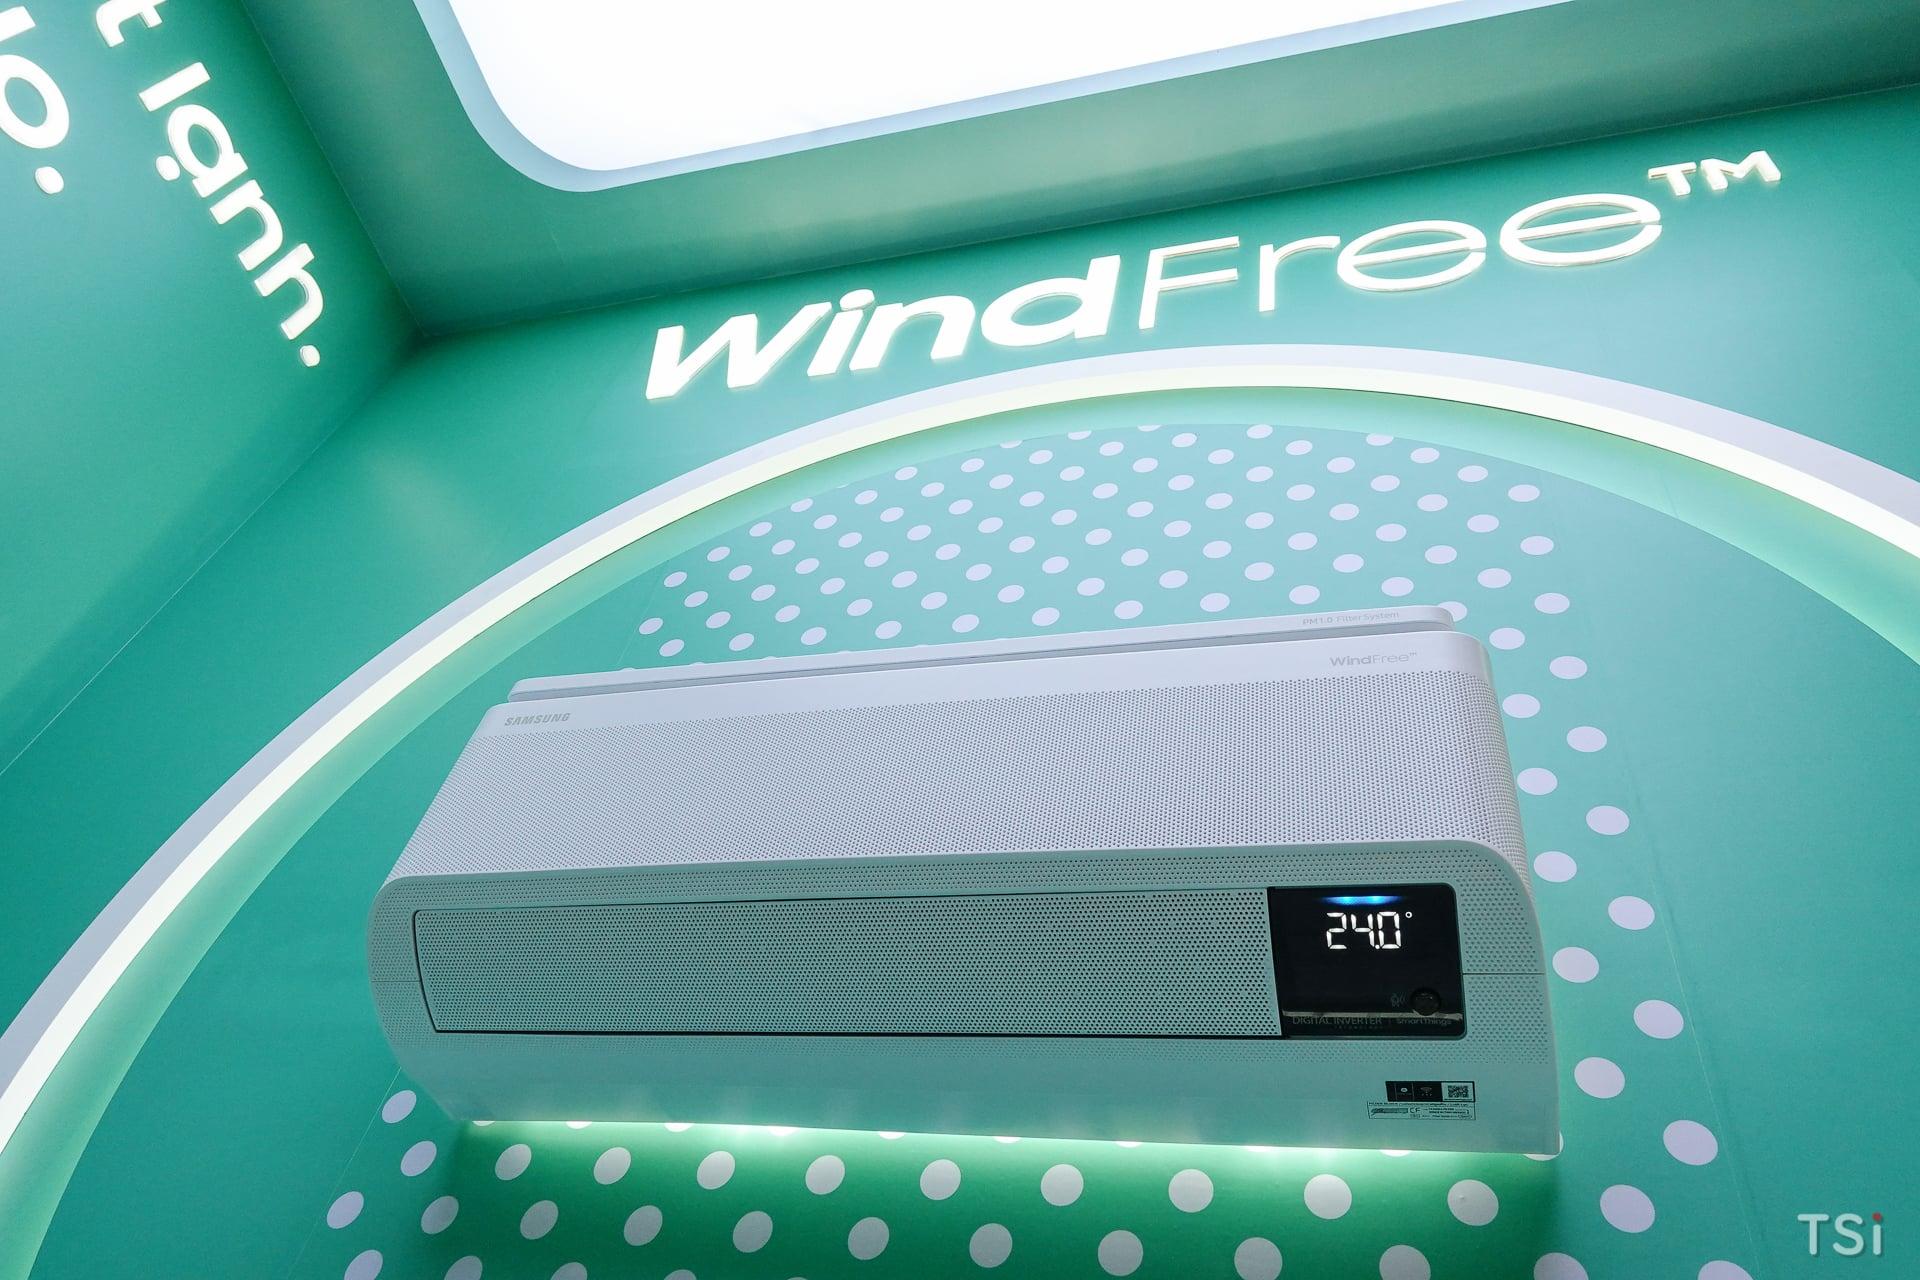 Samsung ra mắt dòng máy điều hòa WindFree thế hệ mới tích hợp AI